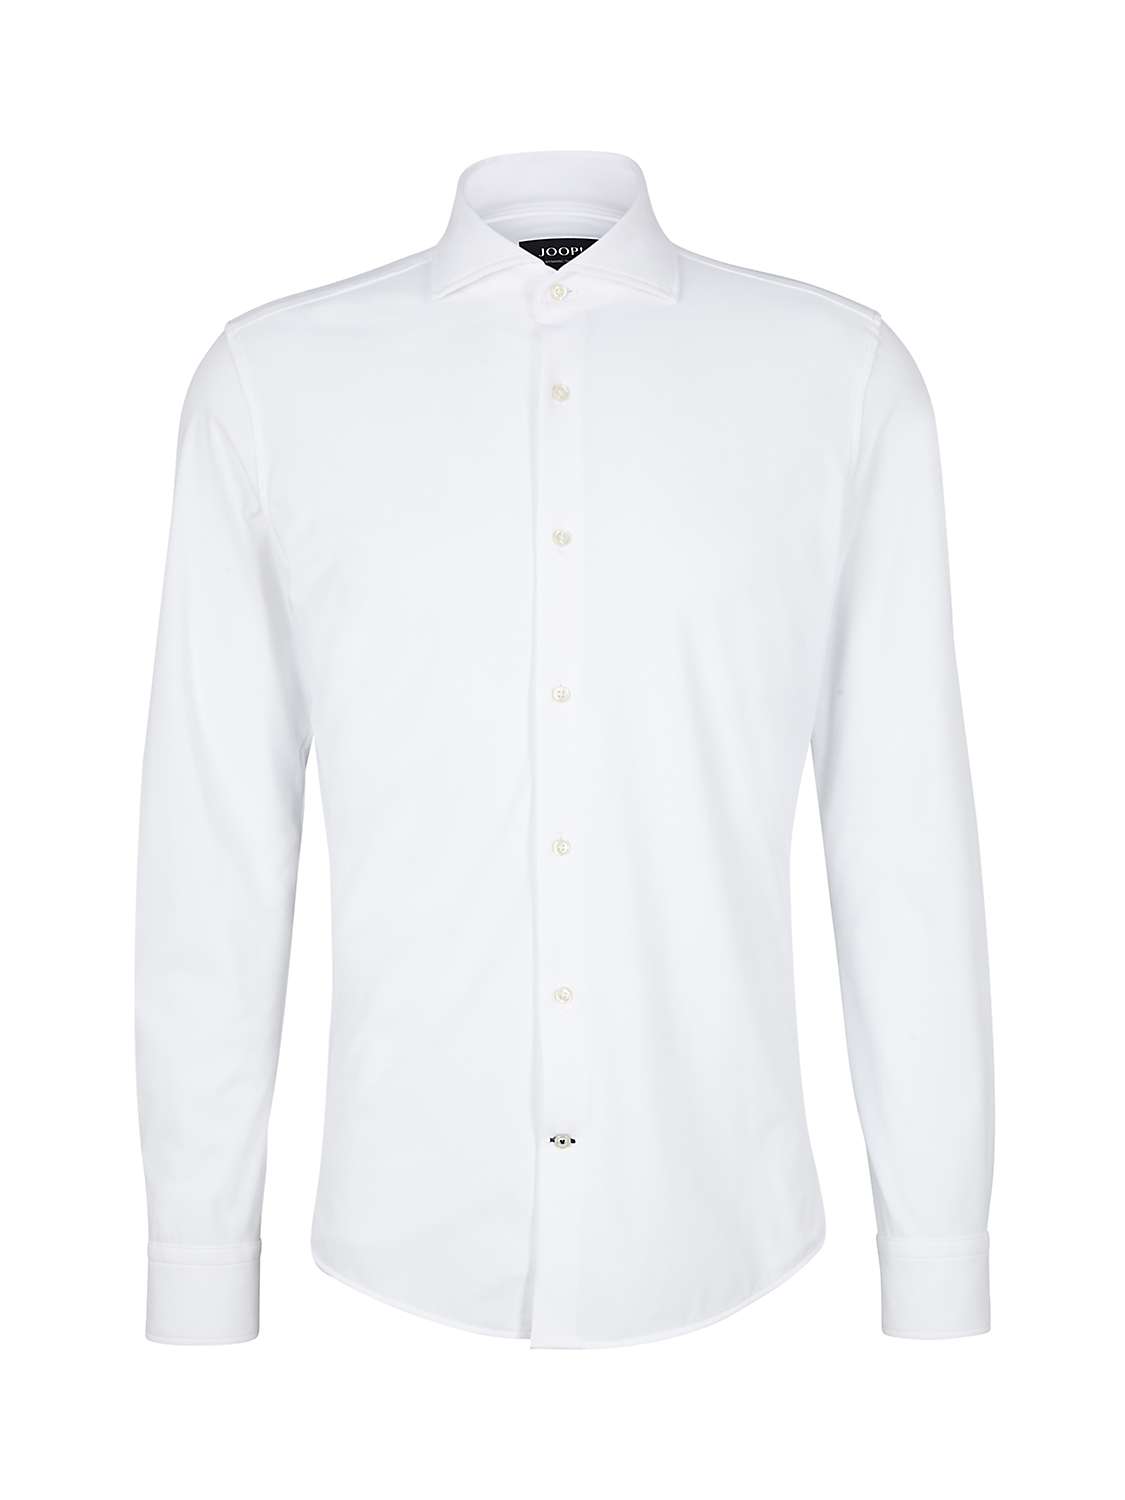 JOOP! Pai Long Sleeve Shirt, White at John Lewis & Partners